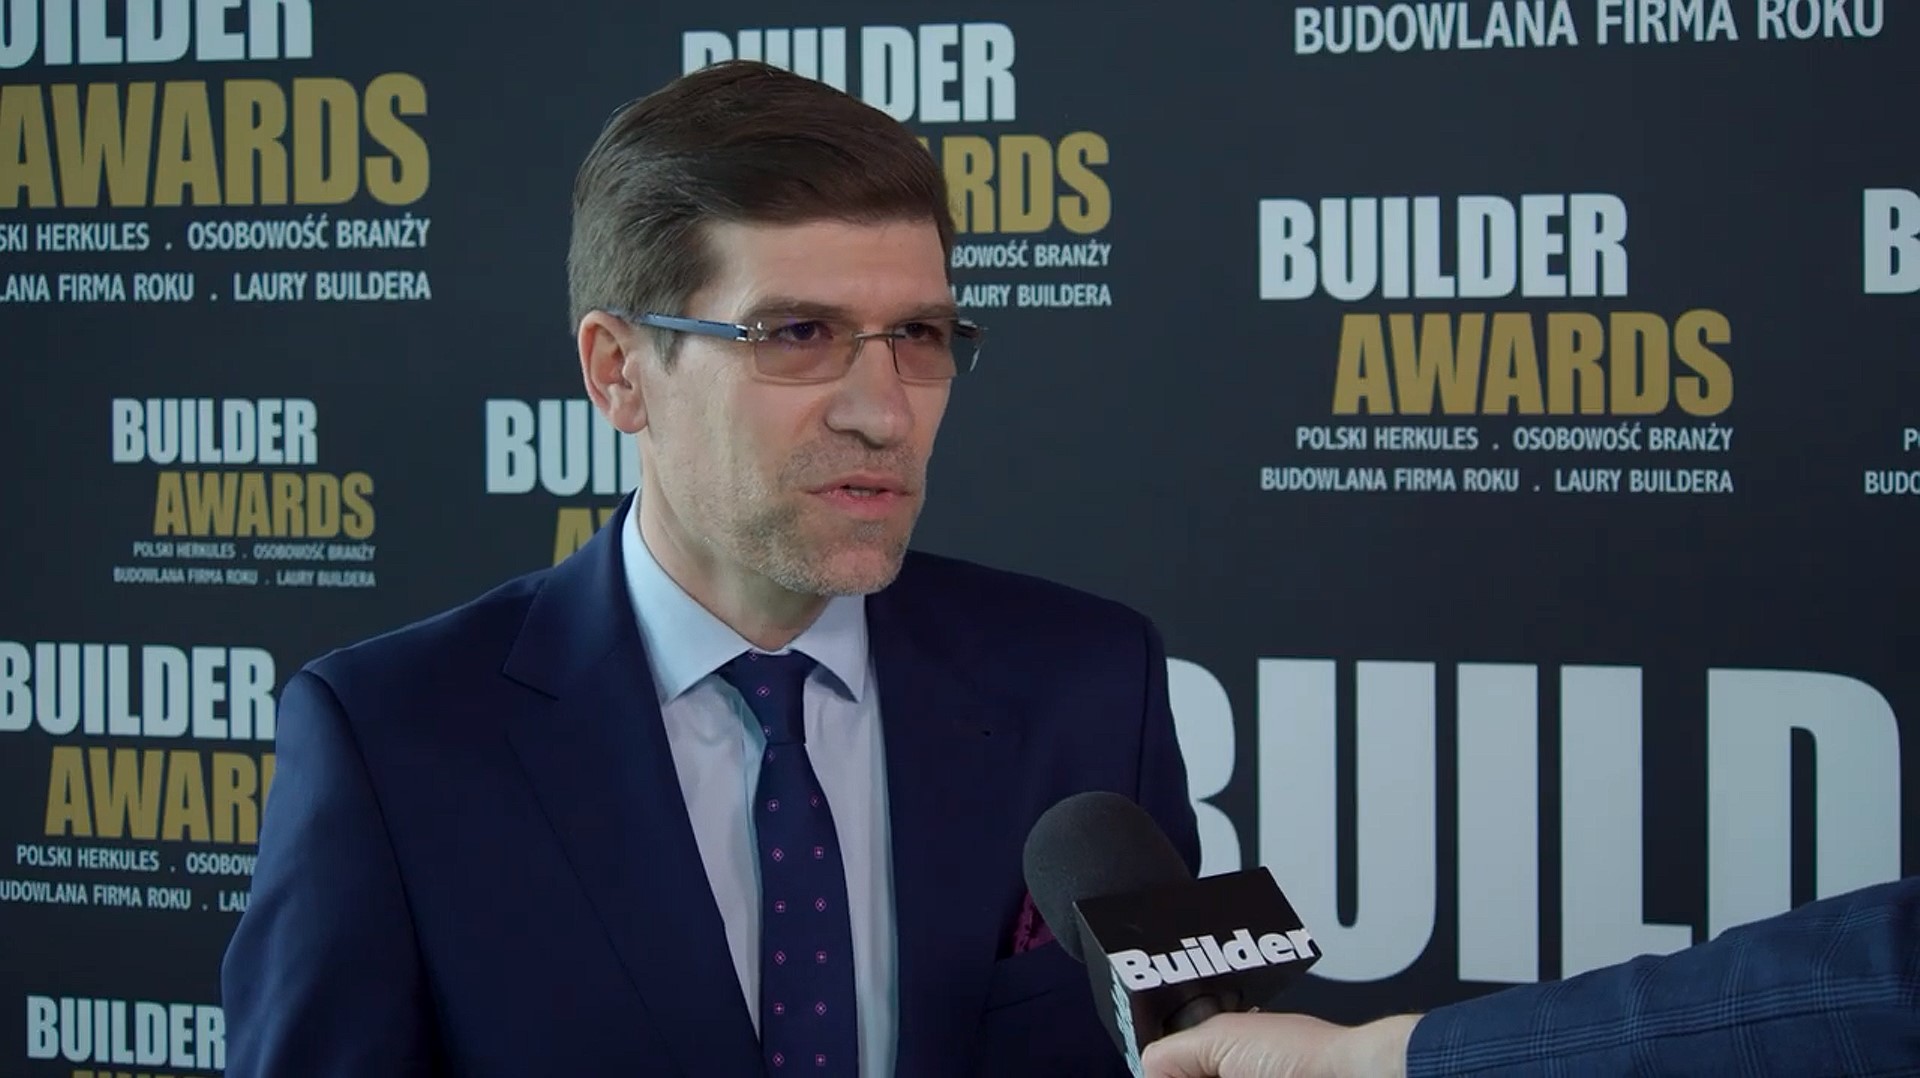 Builder Awards 2022 – Adam Duszyński, Rex-Bud Budownictwo Sp. z o.o. S.K.A.